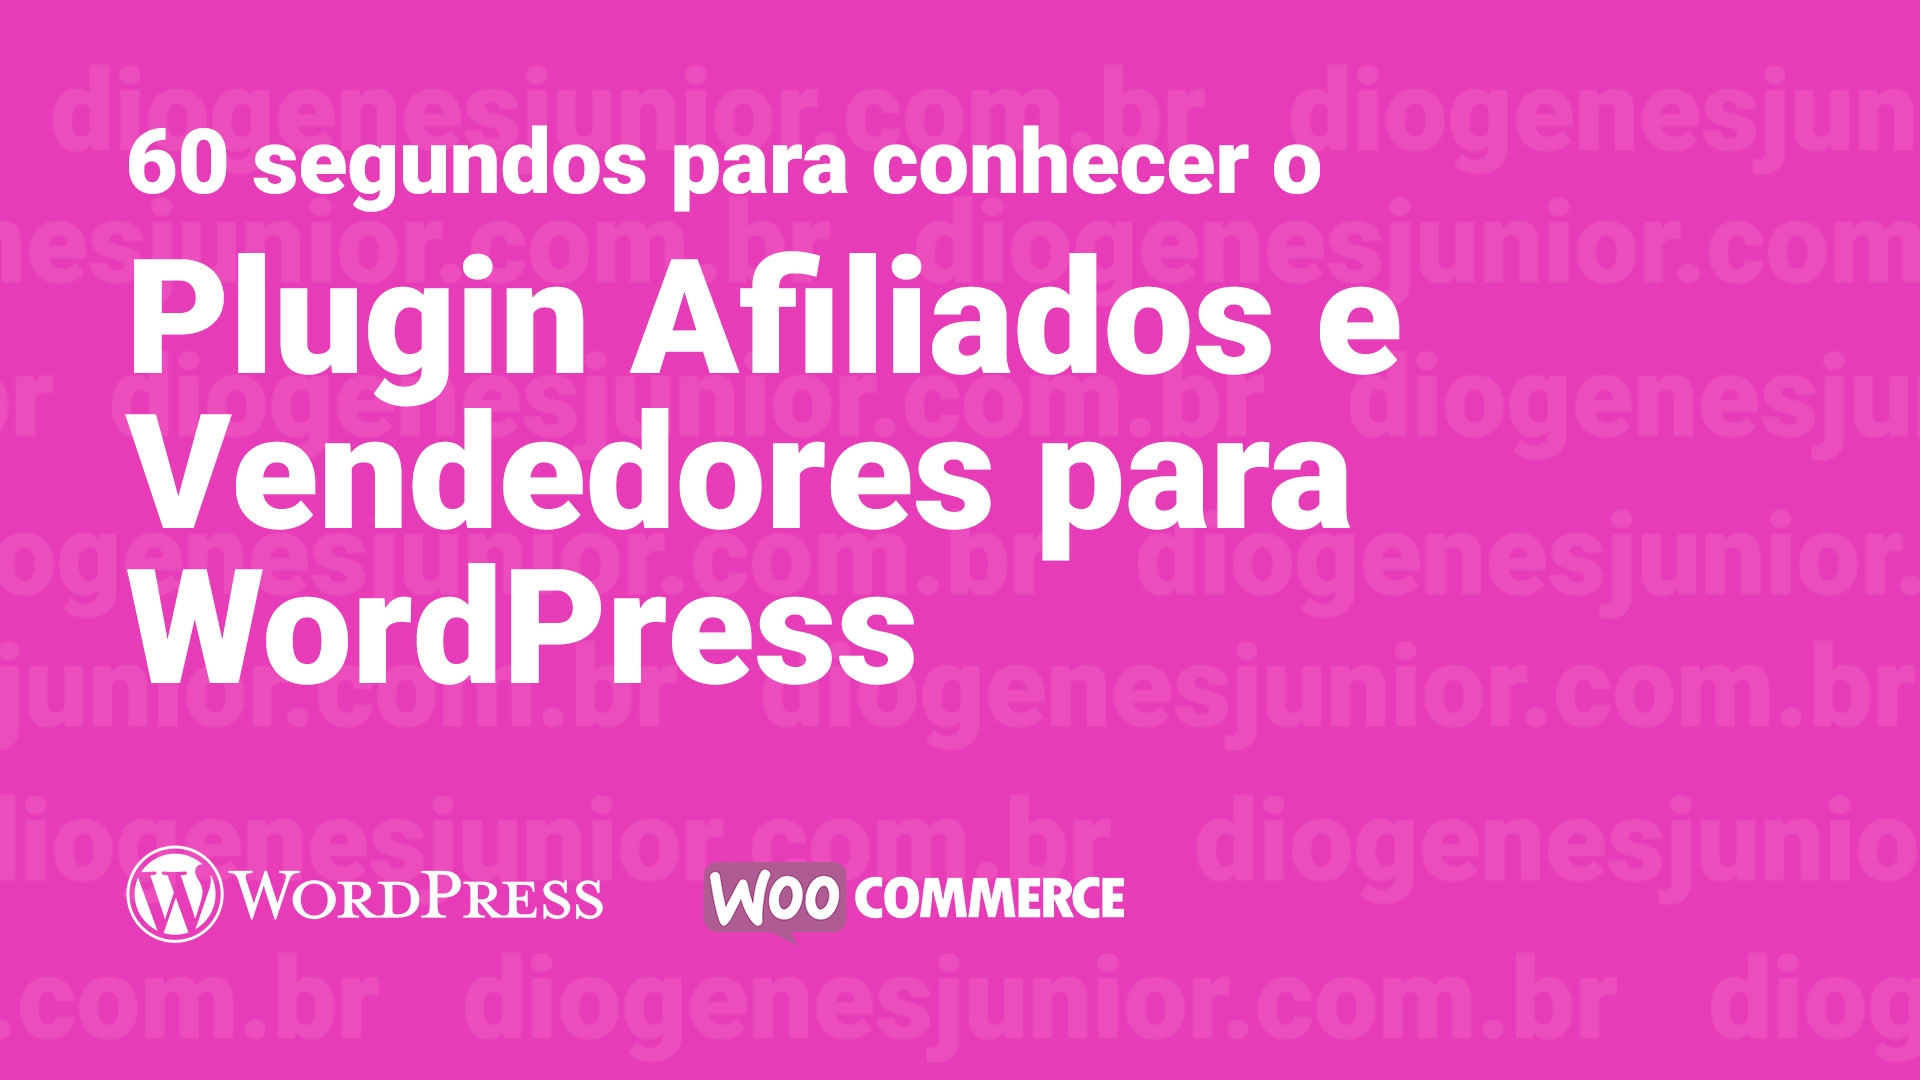 60 Segundos para conhecer o Plugin Afiliados e Vendedores para WordPress + WooCommerce